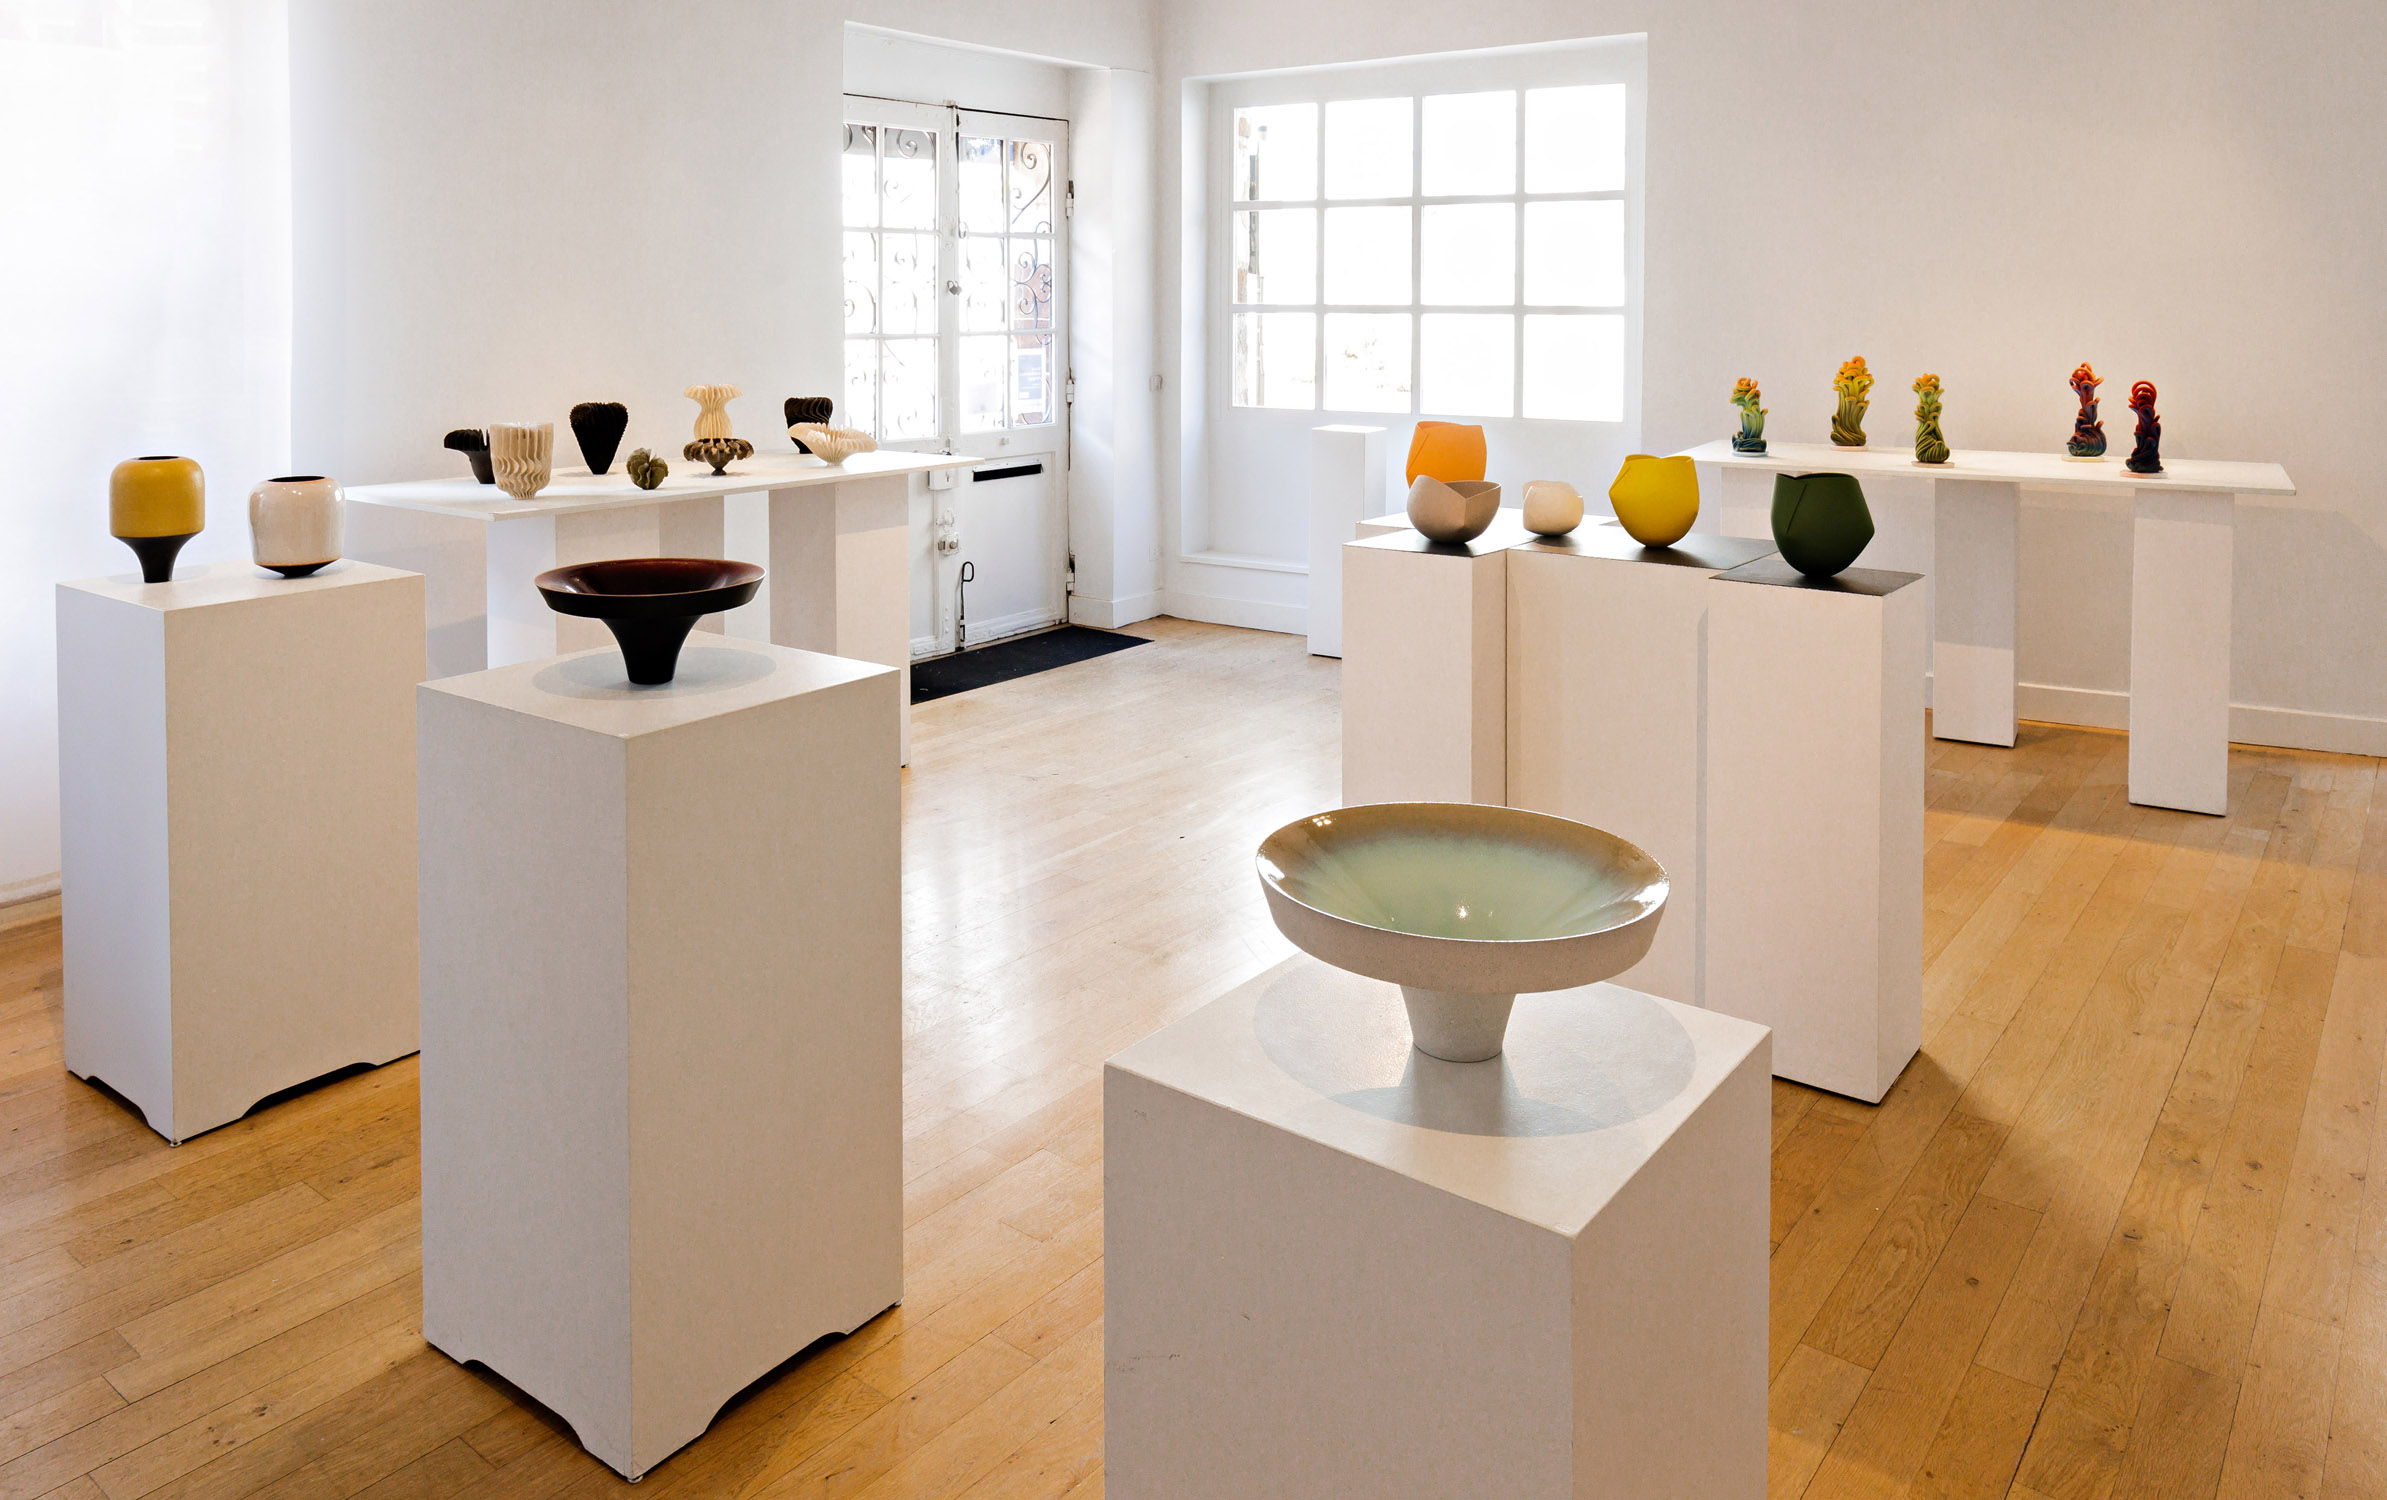 Galerie de l'Ancienne Poste - céramique contemporaine - galerie céramique - exposition céramique - céramique 2020 - céramique contemporaine